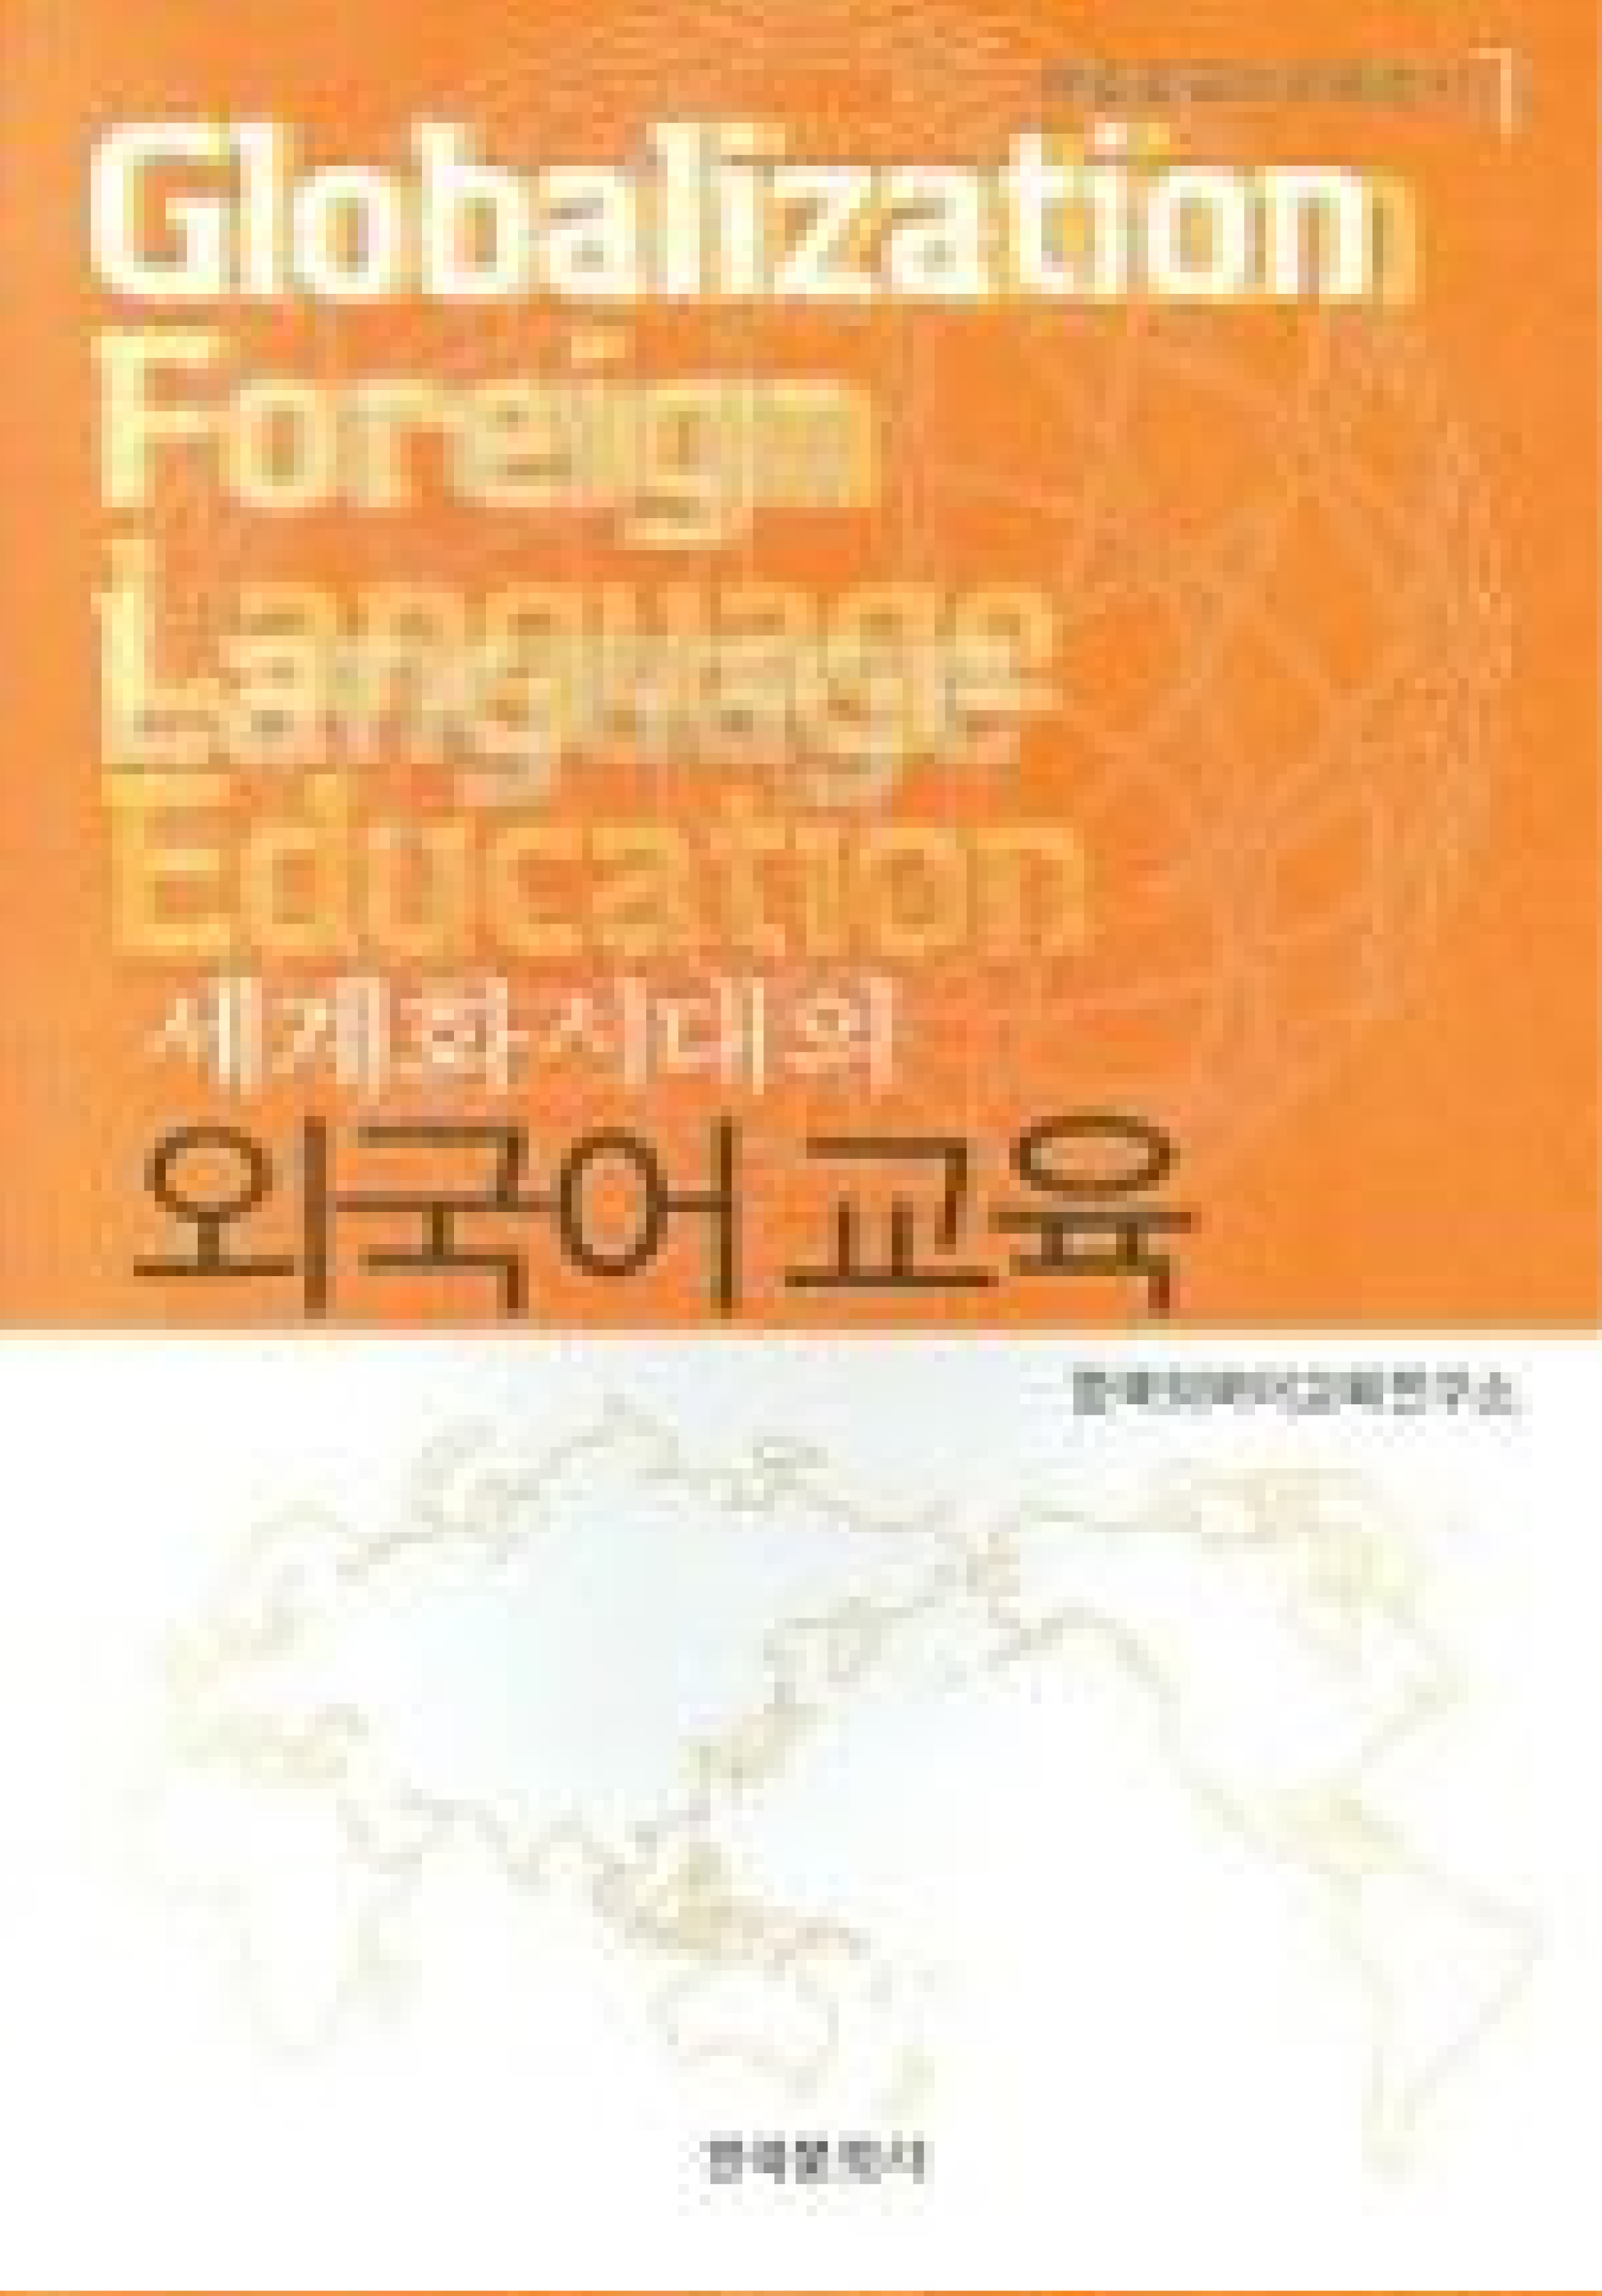 세계화시대의 외국어교육